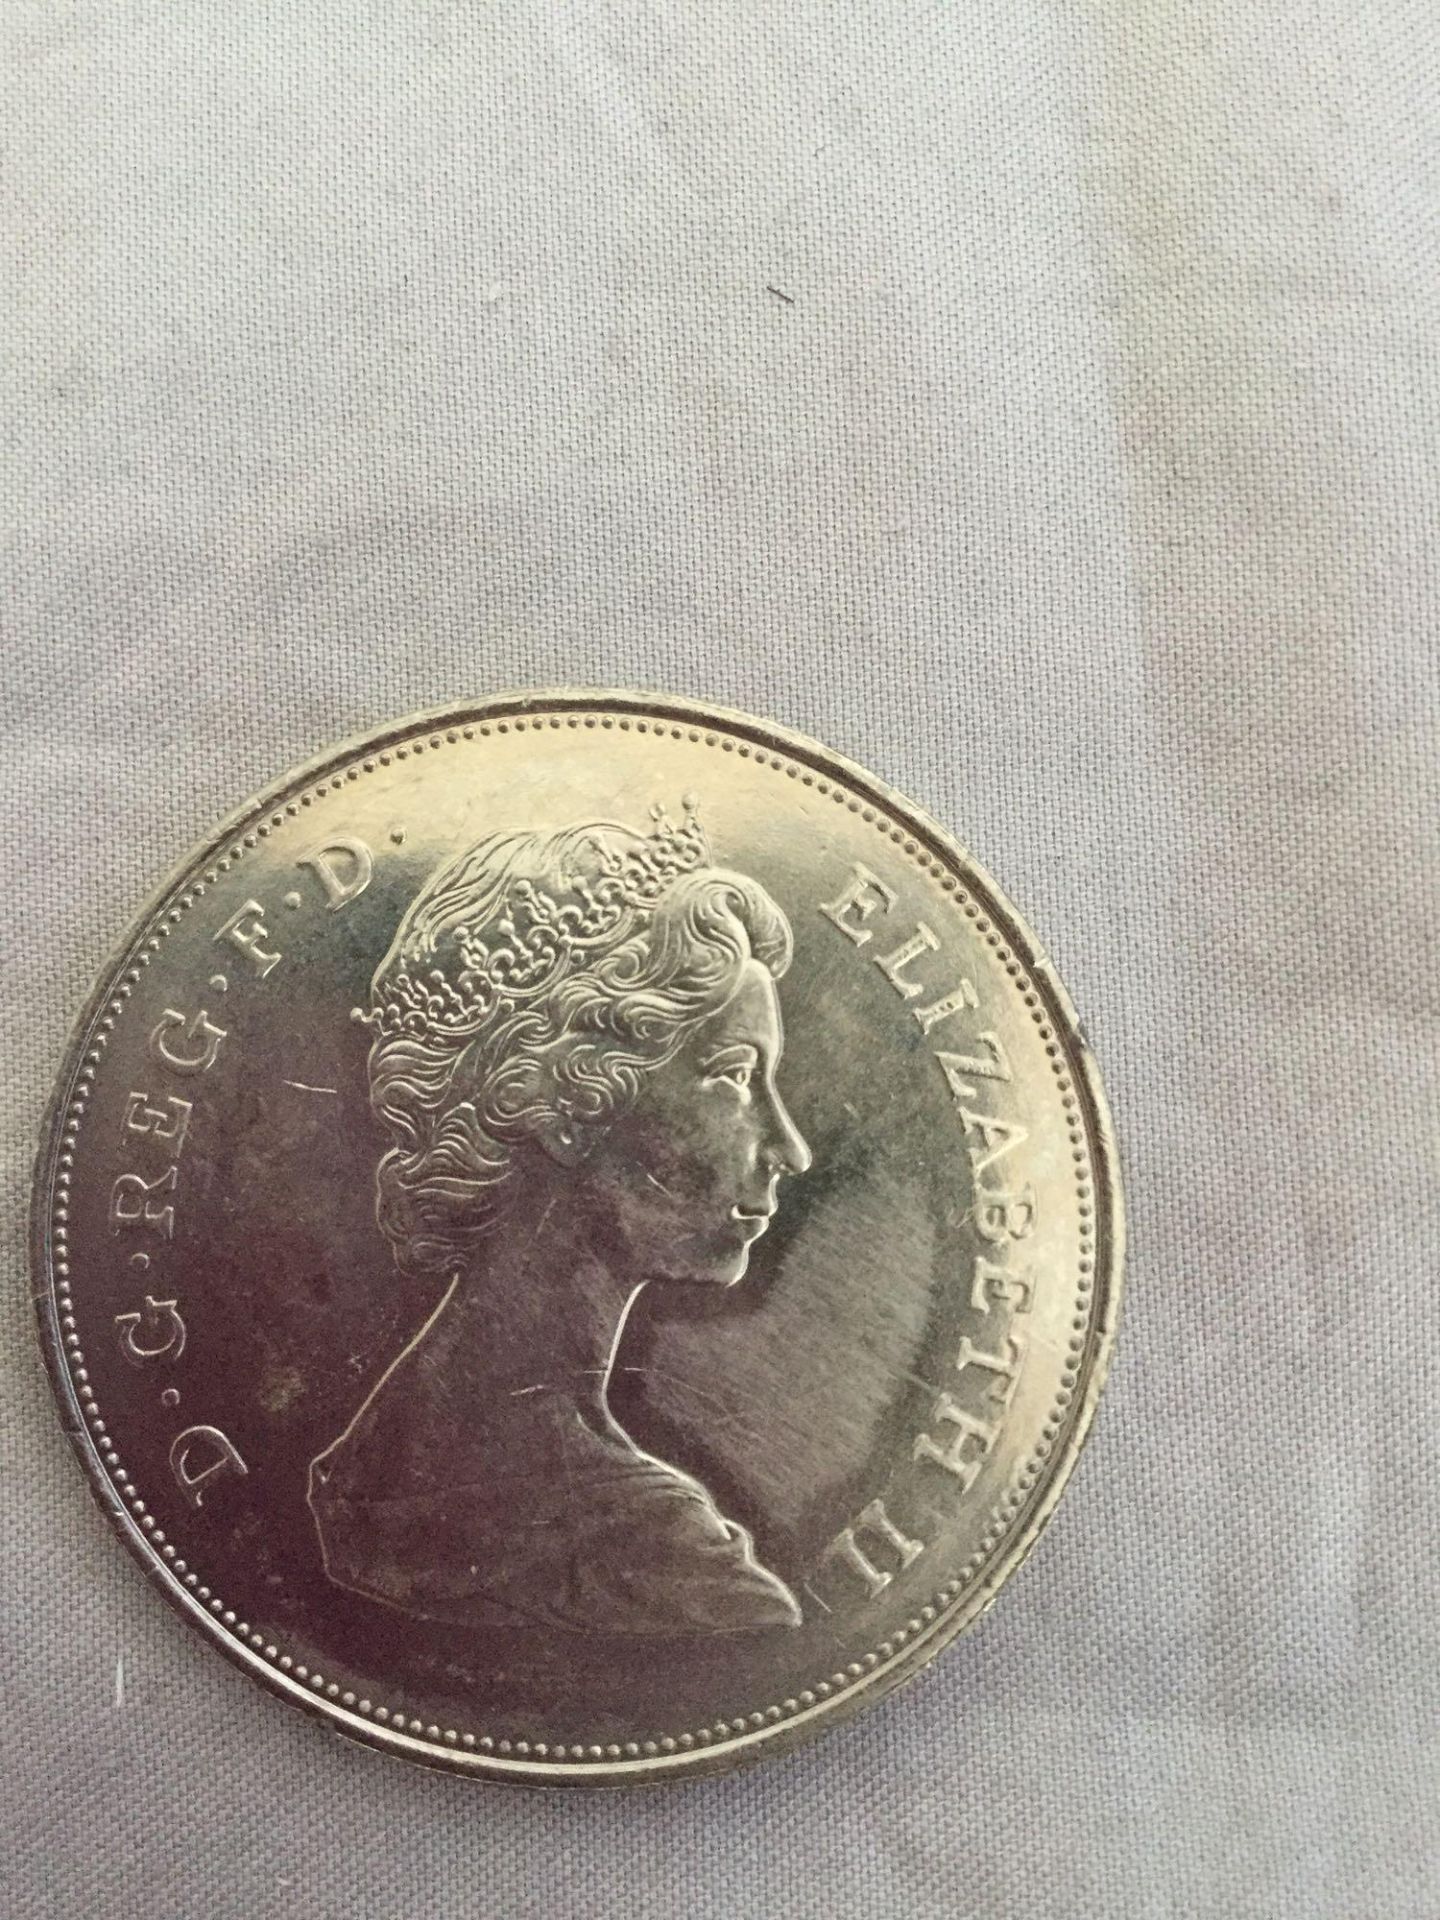 1980 - Queen Elizabeth the Queen Mother - token - Image 4 of 4